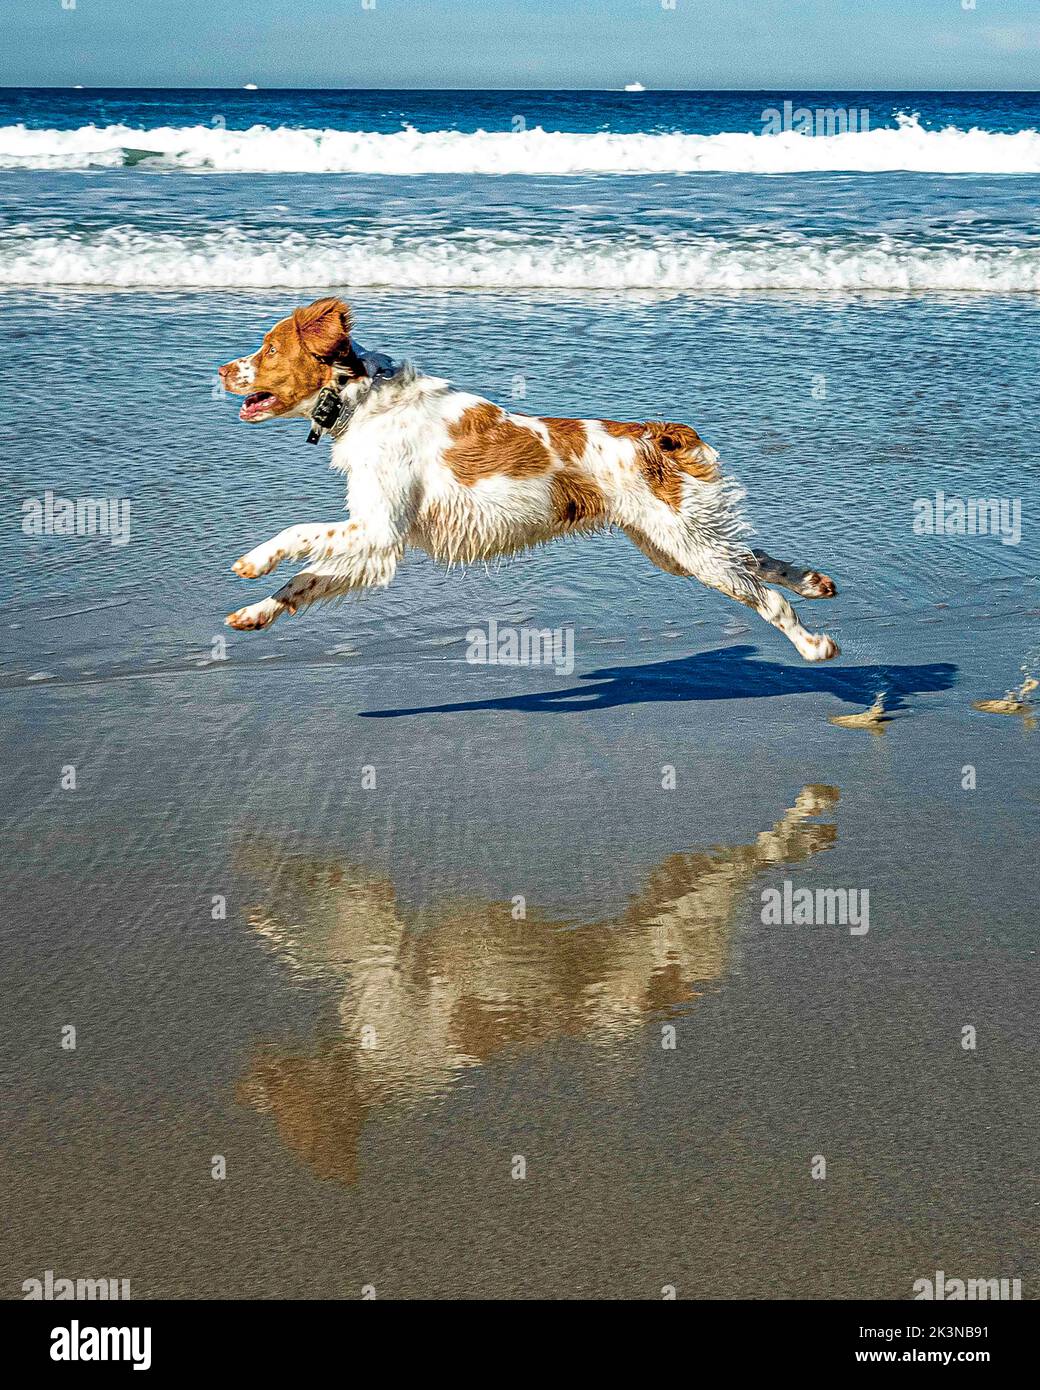 Dogs at the Beach - le temps de jeu à la plage pour les chiens heureux. Les chiens sont en train de courir, de sauter, de courir le long du sable et de l'eau avec la liberté sauvage. Banque D'Images